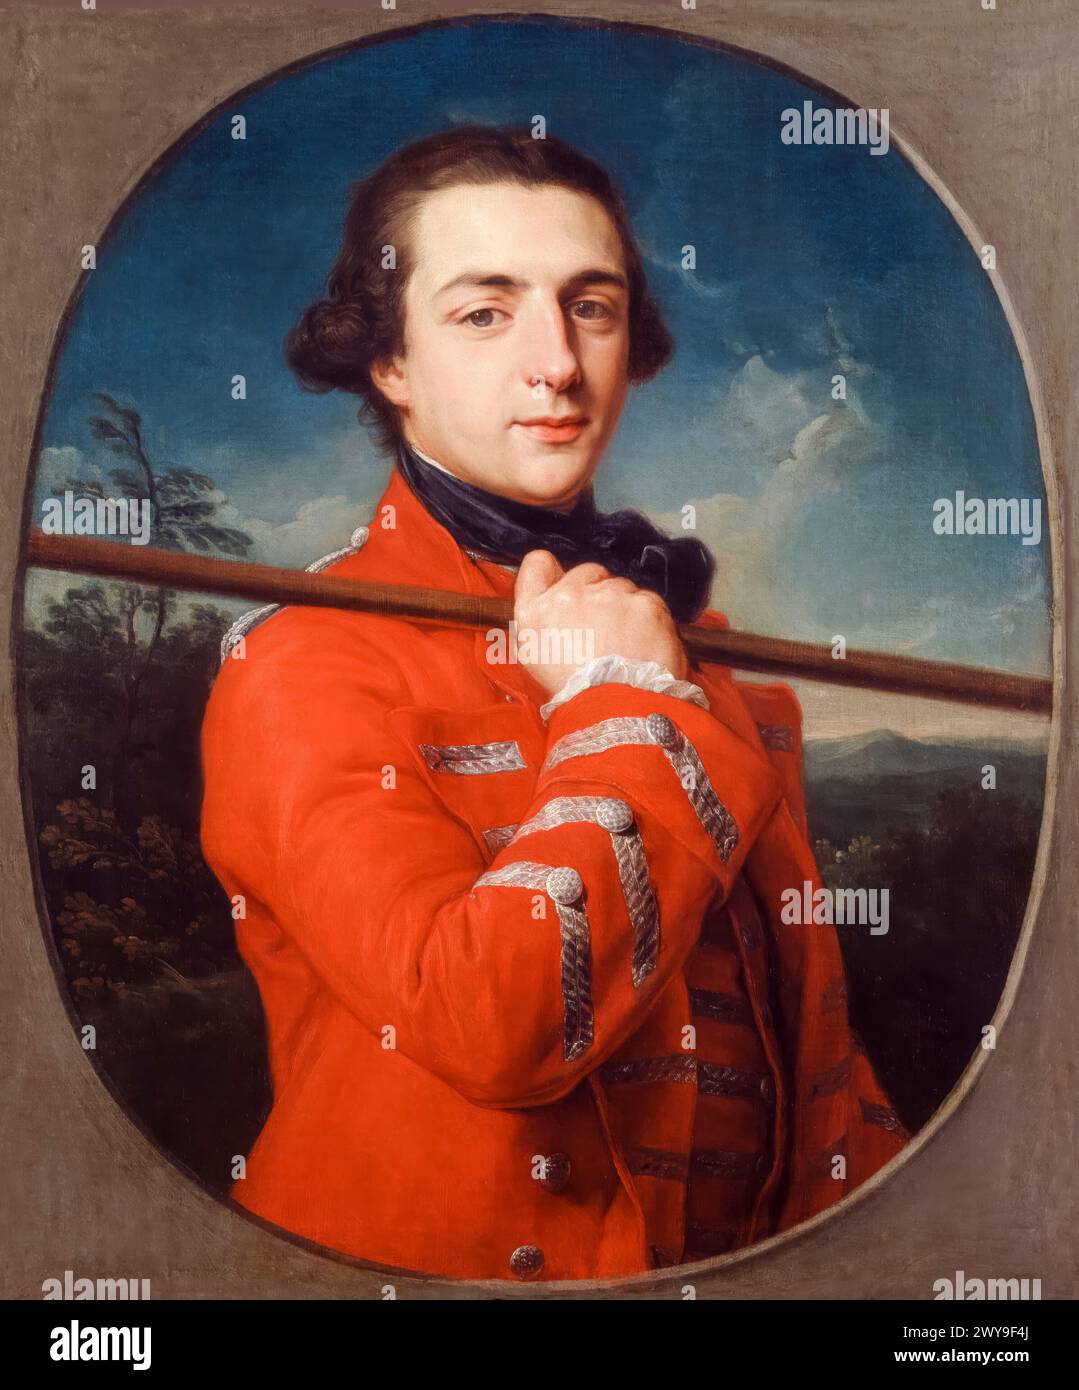 Augustus Henry FitzRoy, 3e duc de Grafton (1735-1811), homme politique whig et premier ministre de Grande-Bretagne 1768-1770, portrait peint à l'huile sur toile par Pompeo Batoni, 1762 Banque D'Images